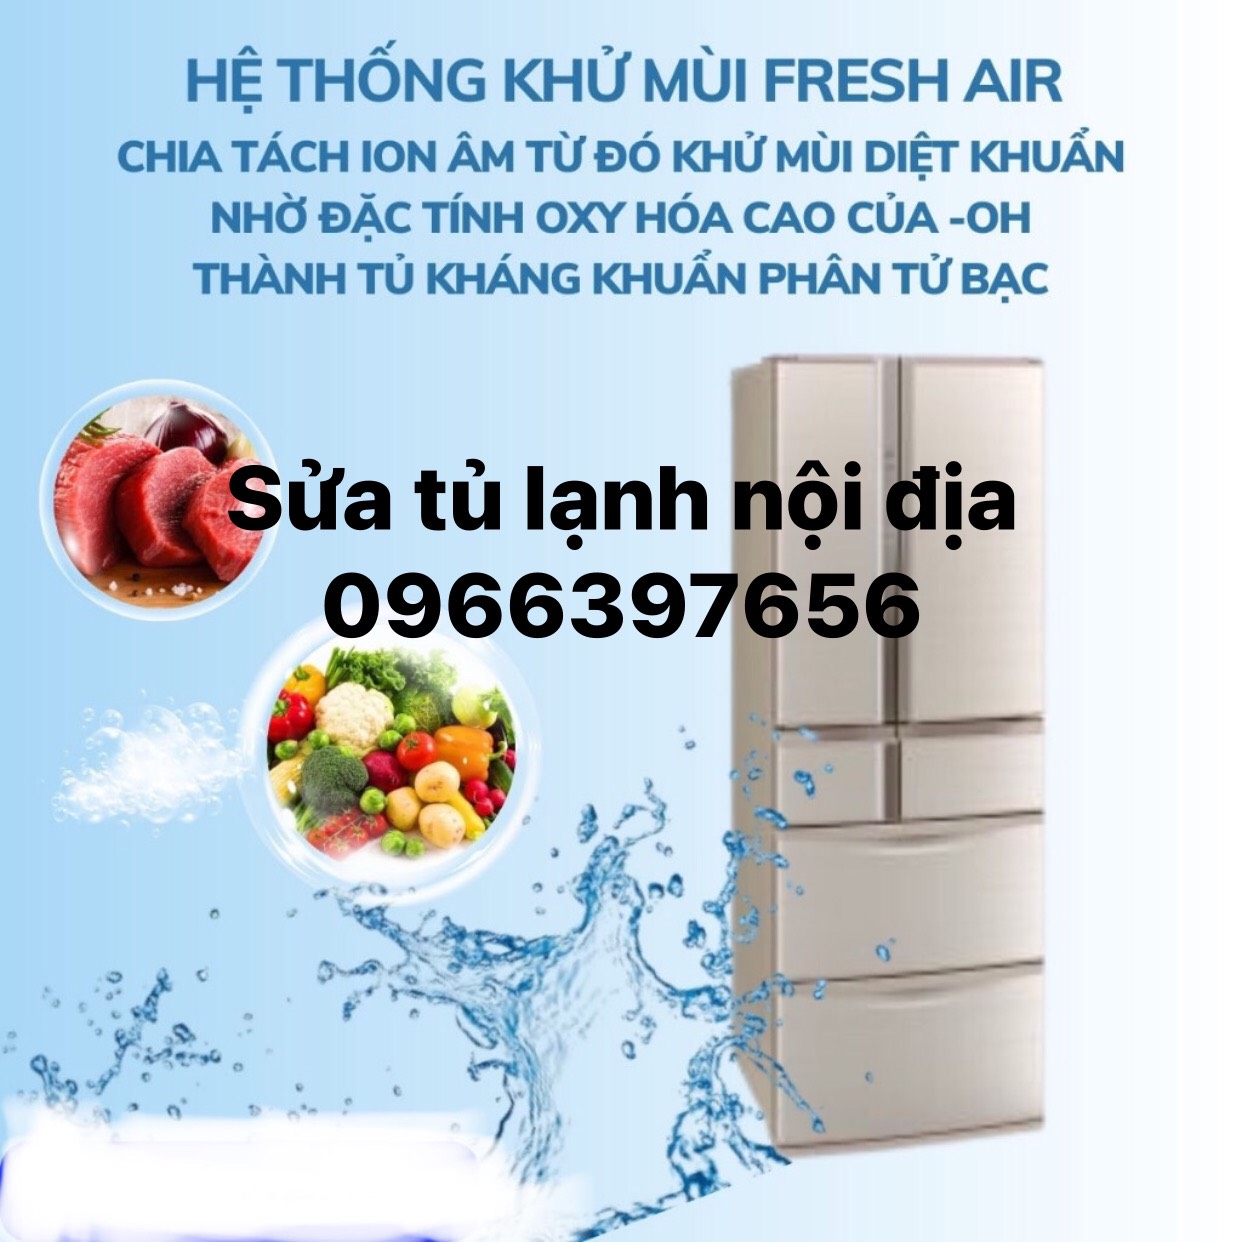 Chuyên sửa chữa tủ lạnh Nhật nội địa tại nhà Hà Nội